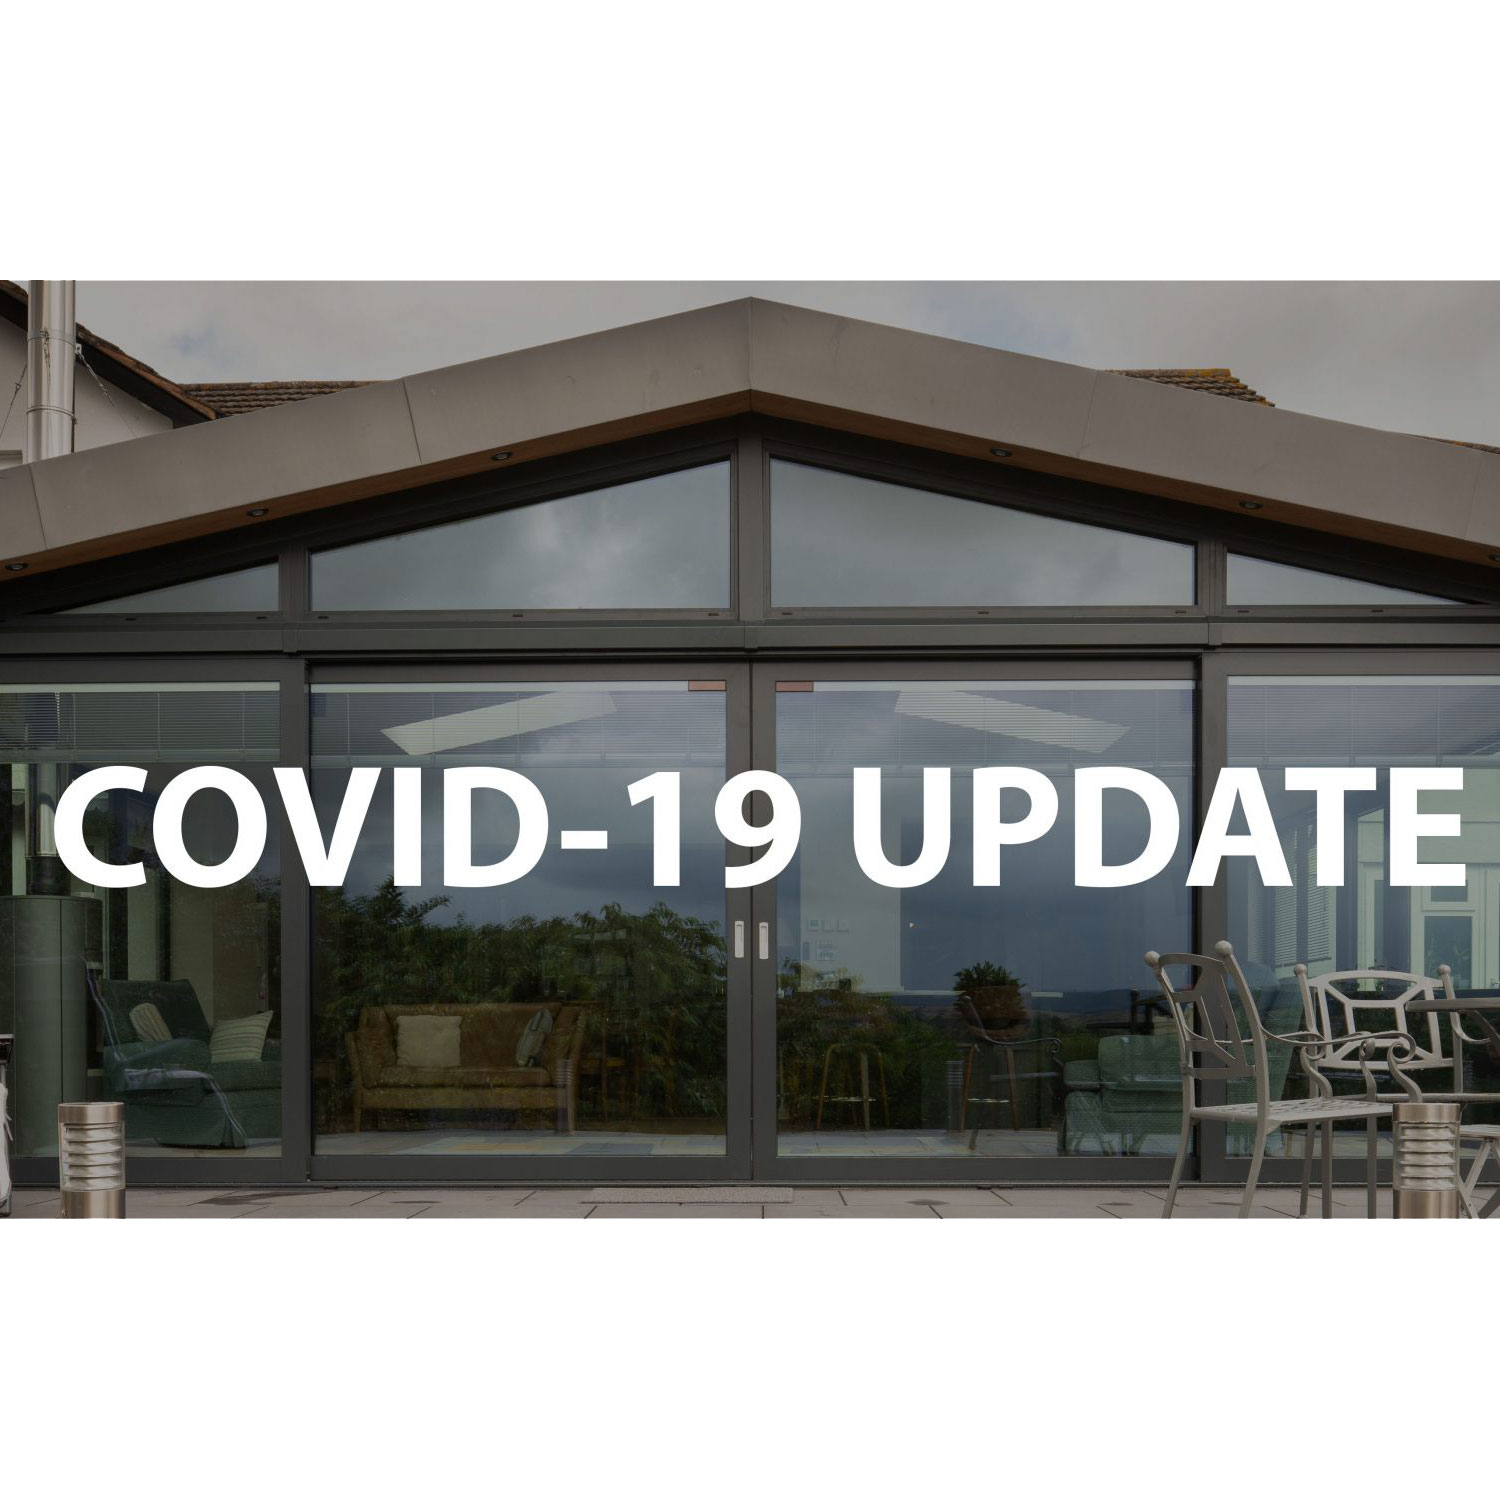 A business update – COVID-19